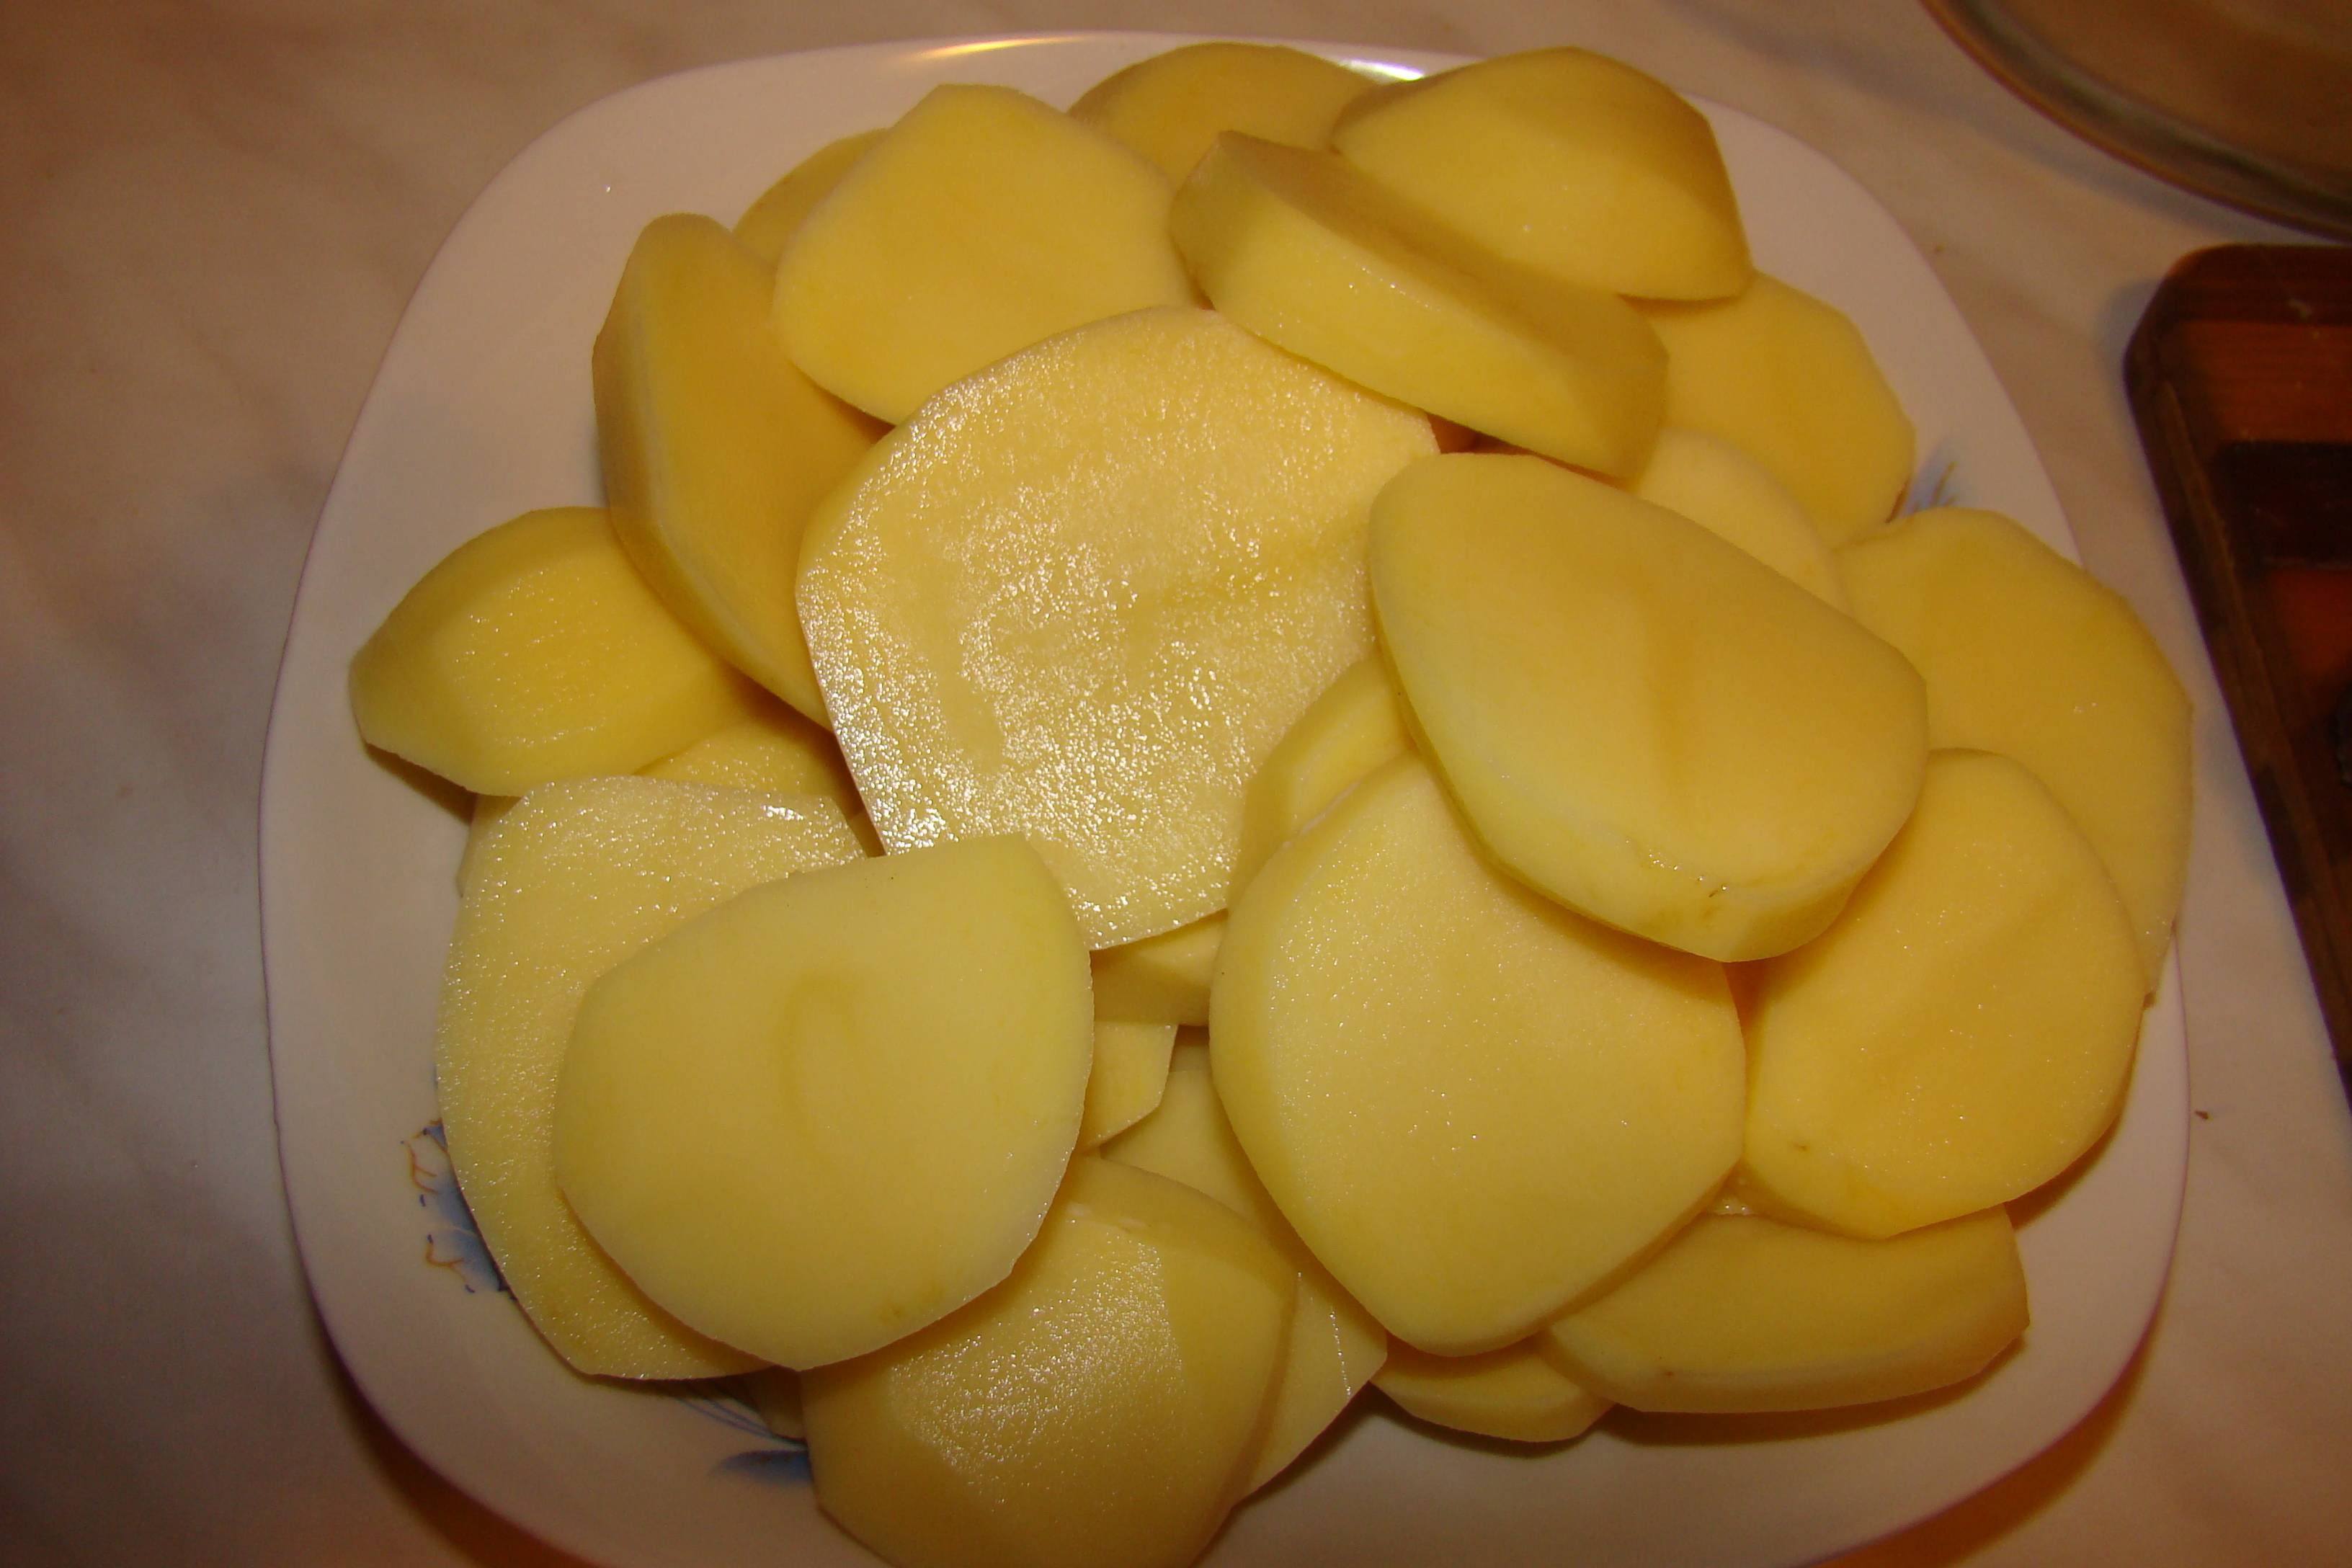 Muschiulet afumat cu cartofi la cuptor